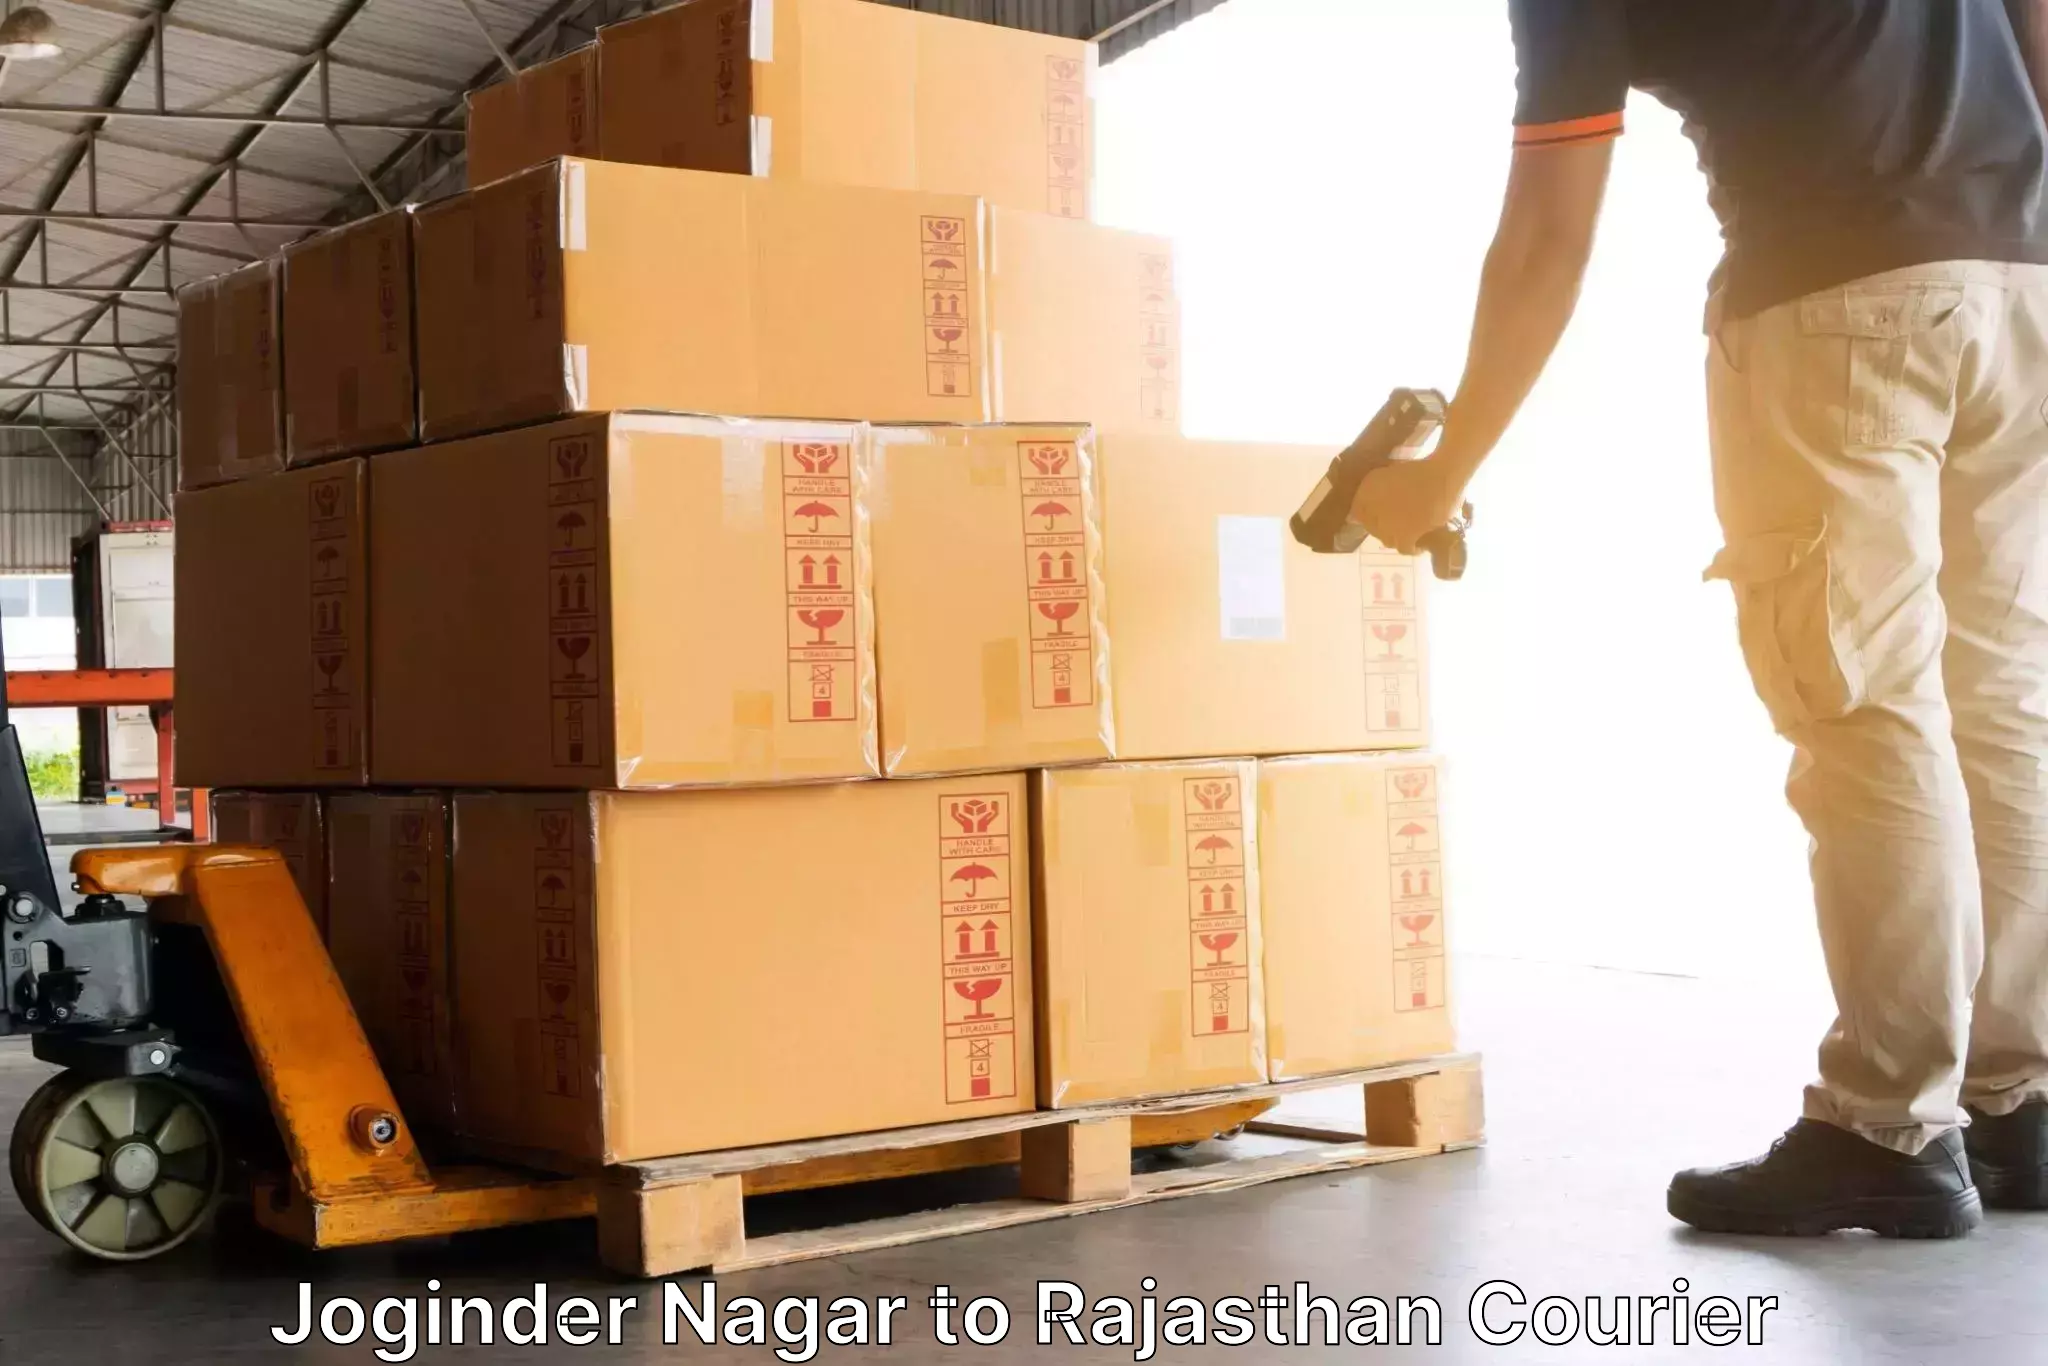 Nationwide parcel services Joginder Nagar to Nagaur